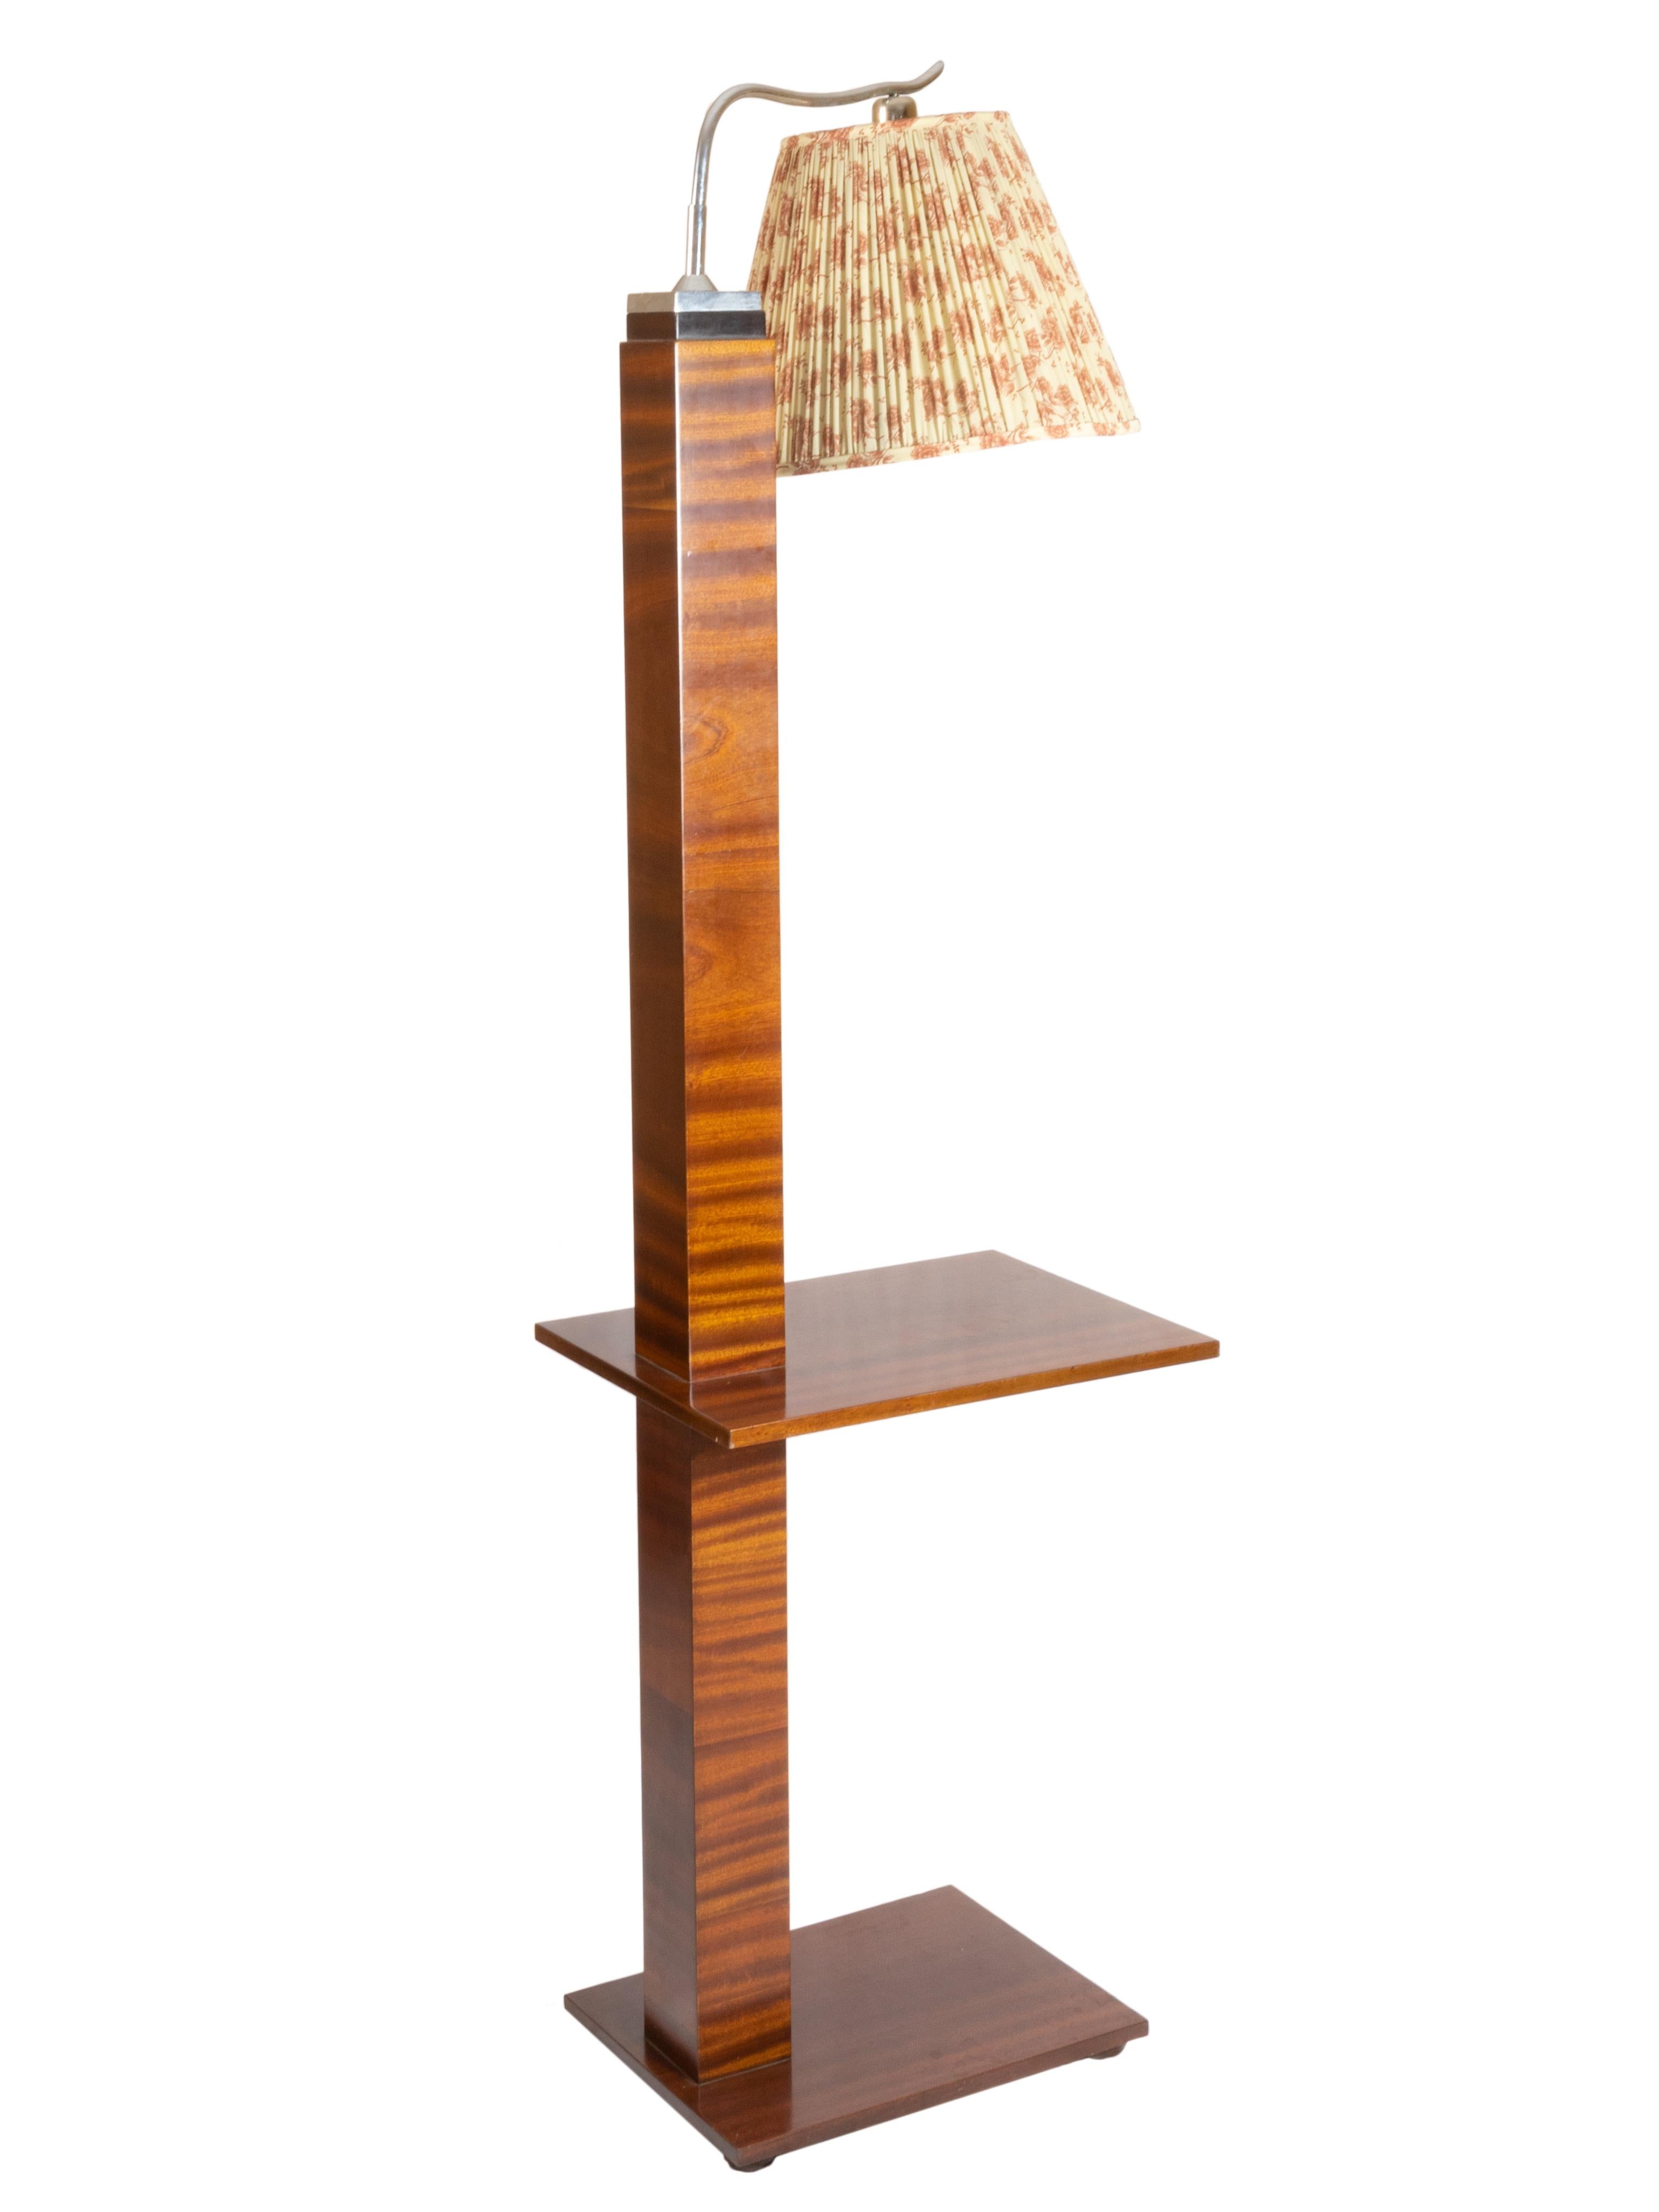 Eine elegante französische Stehlampe mit einem zweistöckigen Beistelltisch aus Nussbaumholz, einem verchromten Arm und einem großformatigen Abajour aus gepflegter Baumwolle mit einem Rosenmuster. 
Seine Höhe kann reguliert werden.